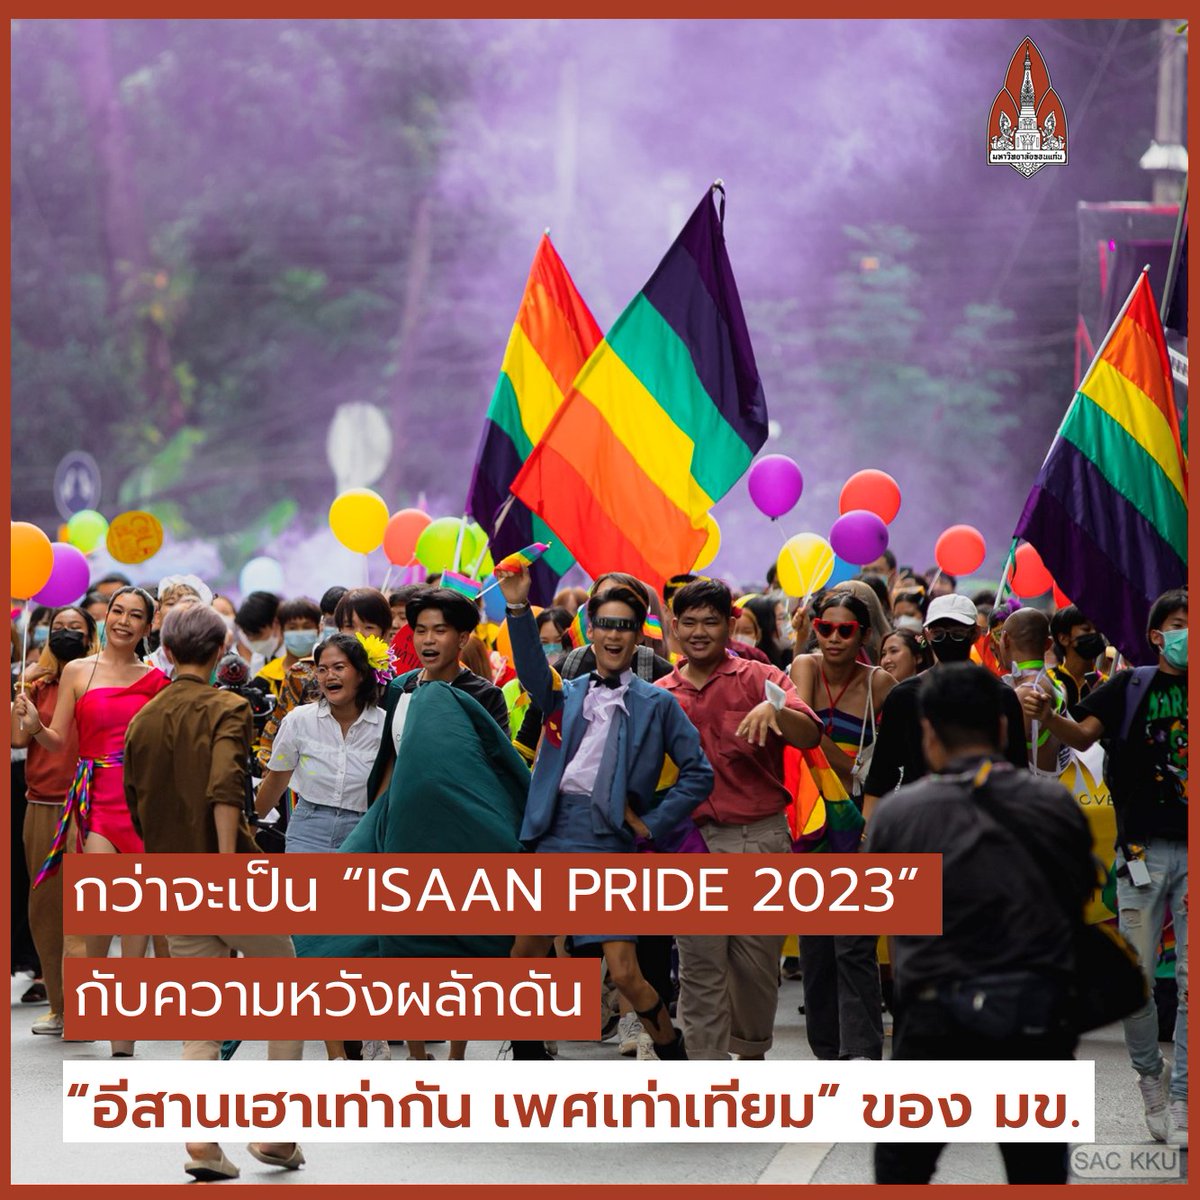 กว่าจะเป็น 'ISAAN PRIDE 2023' กับความหวังผลักดัน “อีสานเฮาเท่ากัน เพศเท่าเทียม” ของ มข. 
.
อ่านต่อ : th.kku.ac.th/146381/ #มหาวิทยาลัยขอนแก่น #IsaanPride #KKU #ทีมมข #LGBTQ #PrideMonth #Pride2023